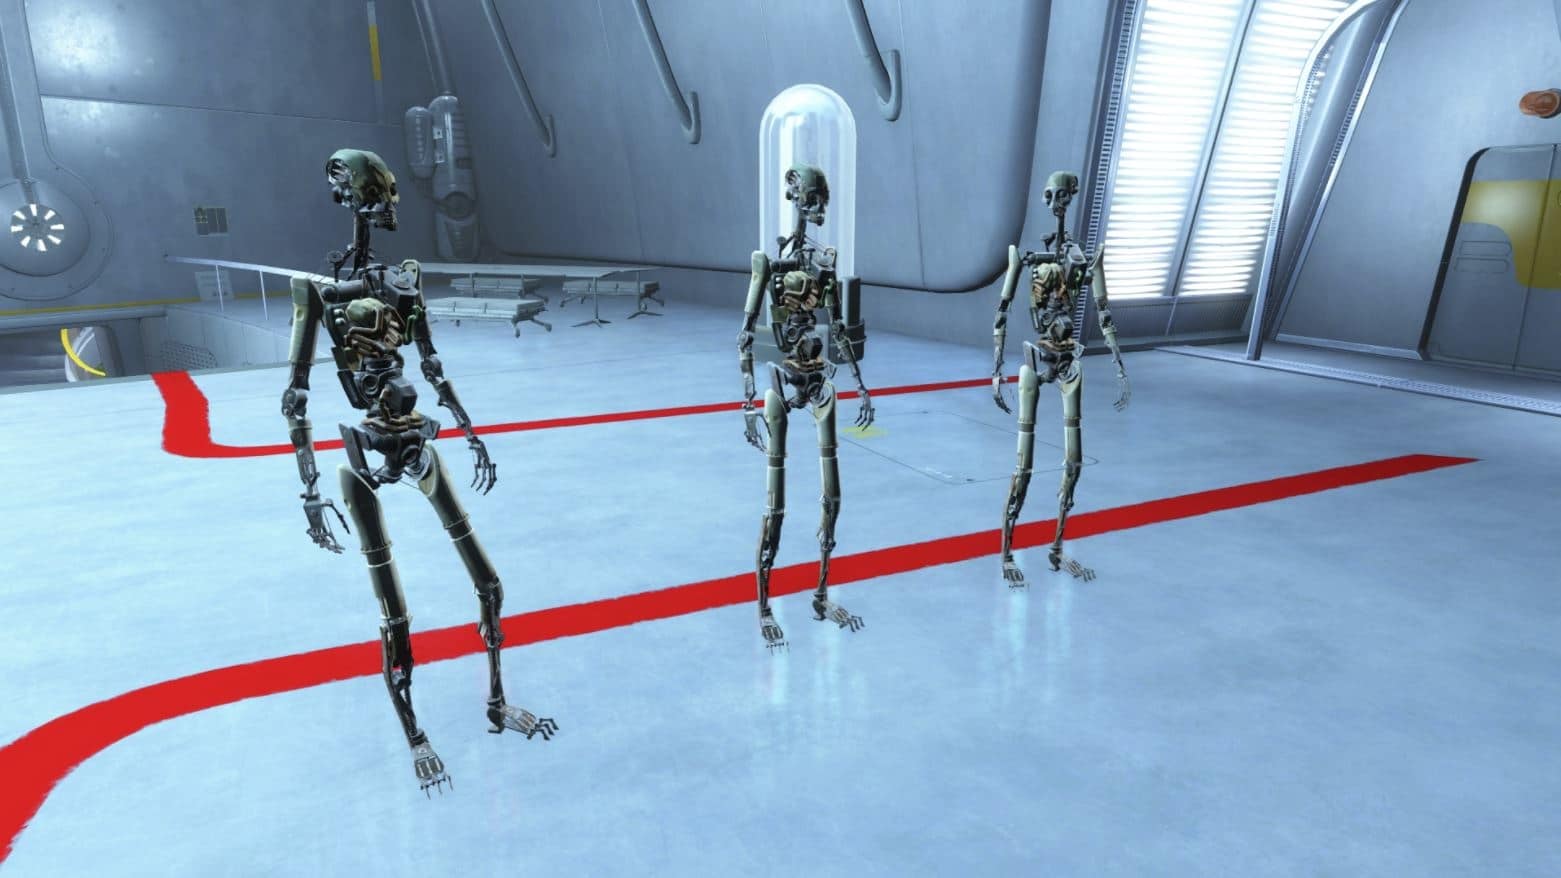 Uma das maiores criações do Instituto: os robots humanóides do Fallout 4, também conhecidos como Synths